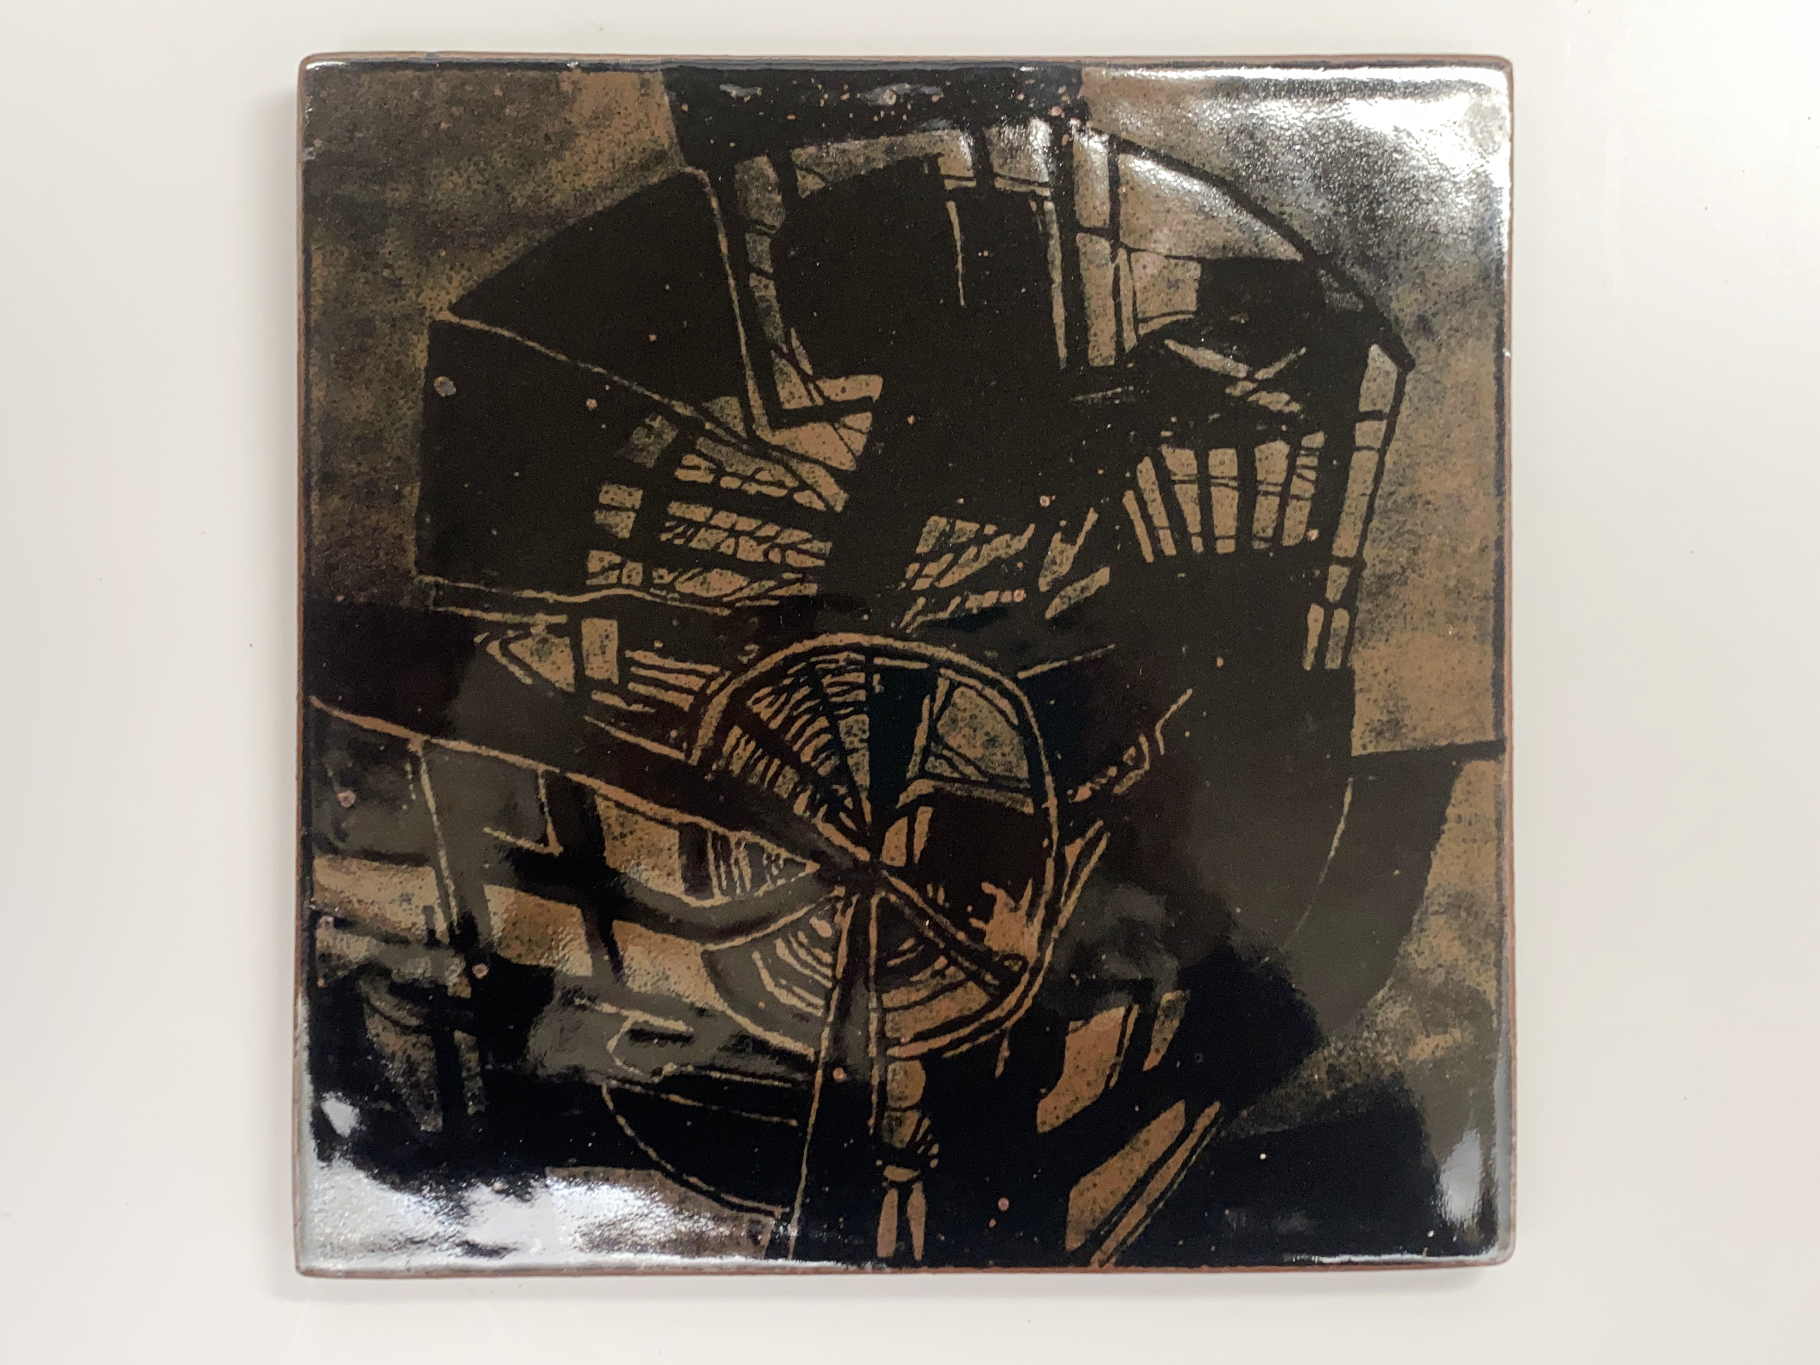 Wand Platte, Keramik, Steinzeug, Unikat, abstrakte Malerei mit Wachs auf schwarzer Glasur, darauf mattschwarze Glasur, von Wilhelm & Elly Kuch, 2006